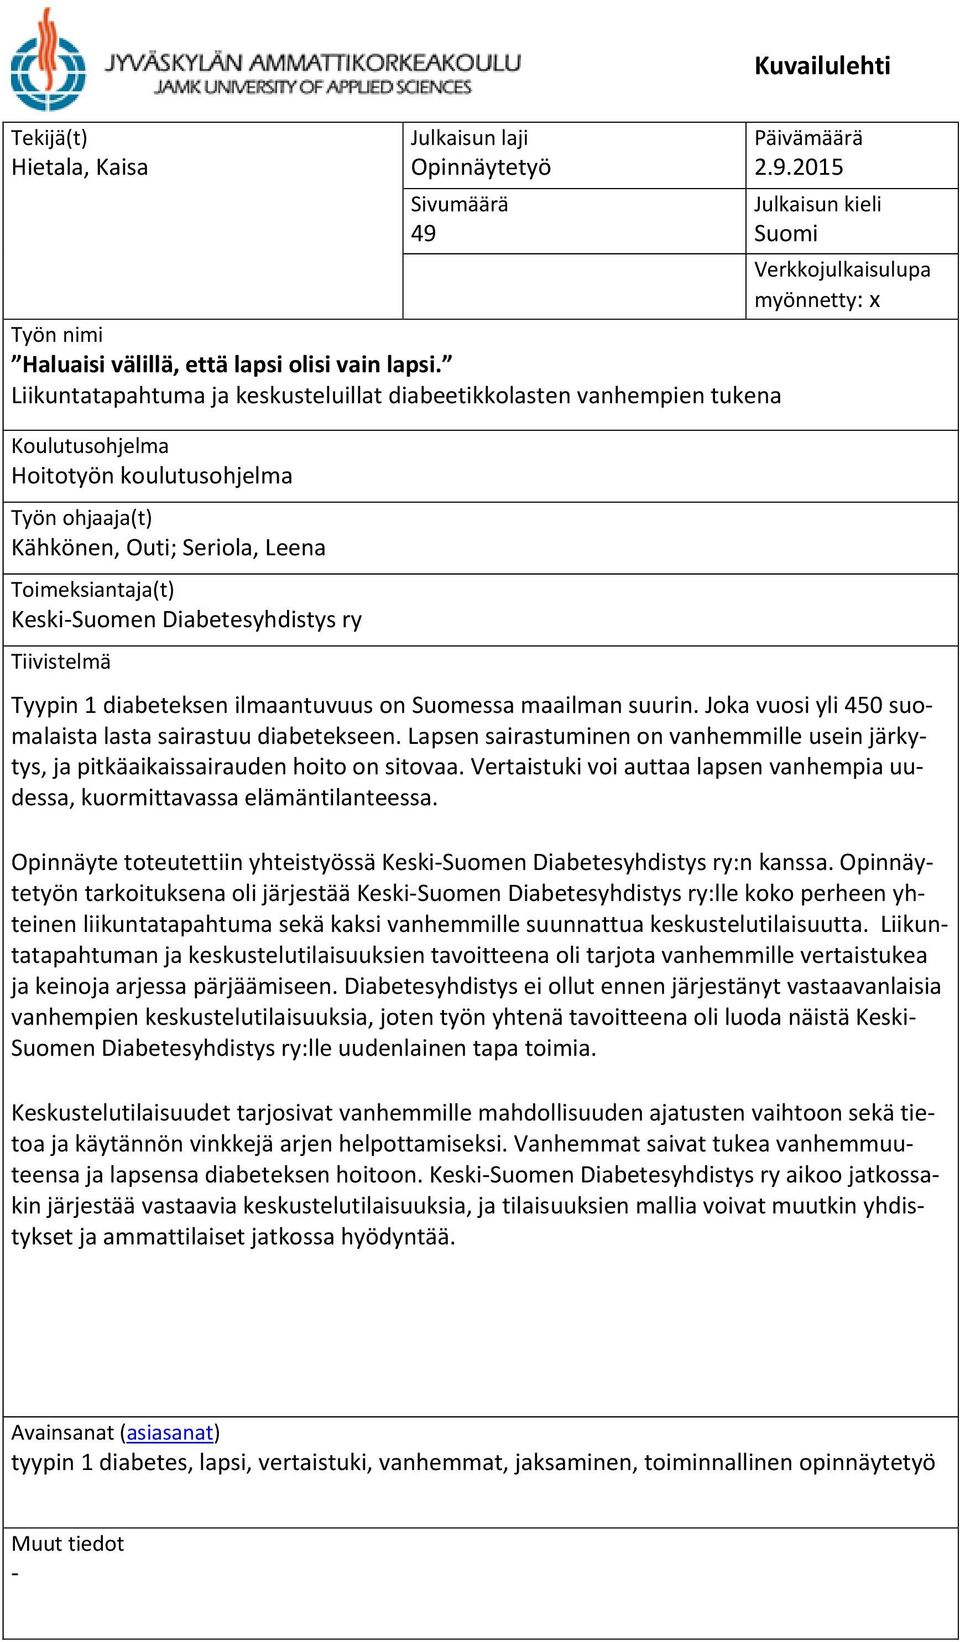 Diabetesyhdistys ry Tiivistelmä Päivämäärä 2.9.2015 Julkaisun kieli Suomi Verkkojulkaisulupa myönnetty: x Tyypin 1 diabeteksen ilmaantuvuus on Suomessa maailman suurin.